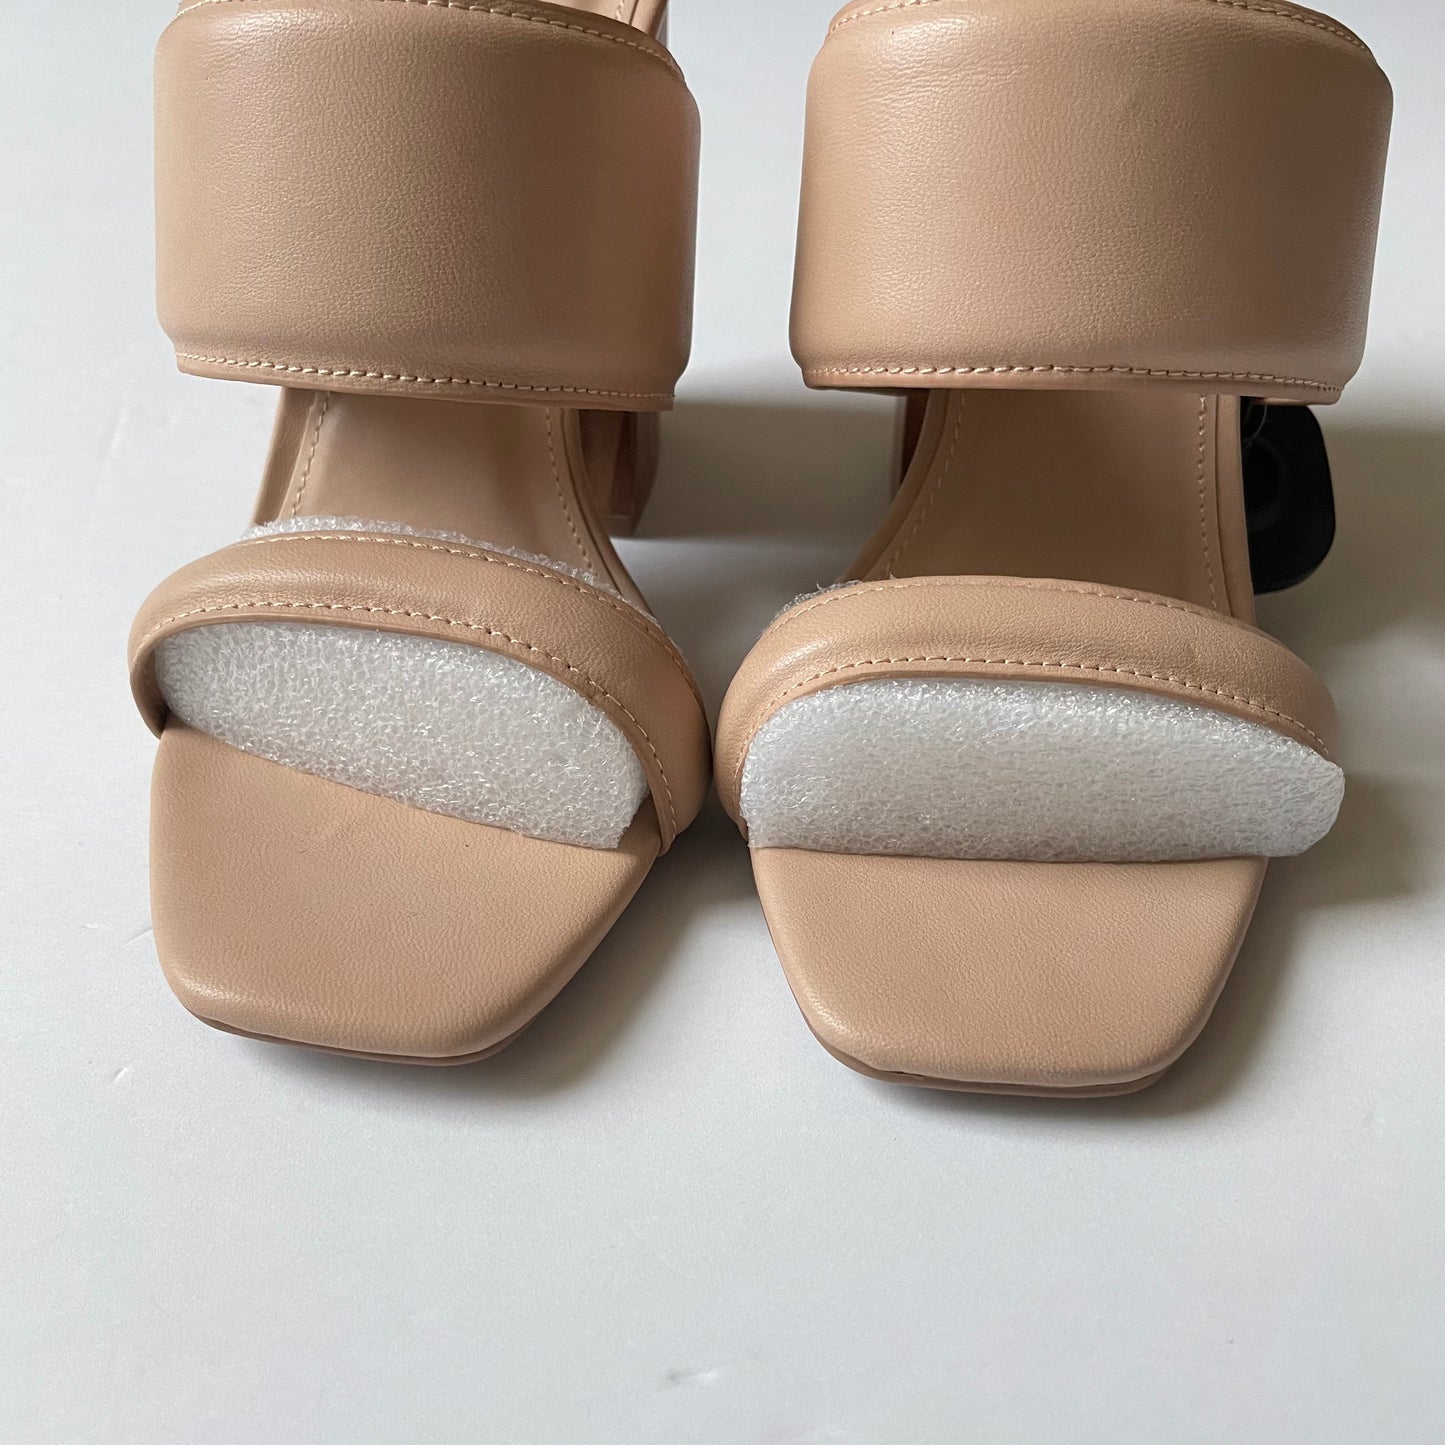 Tan Shoes Heels Block Qupid, Size 8.5